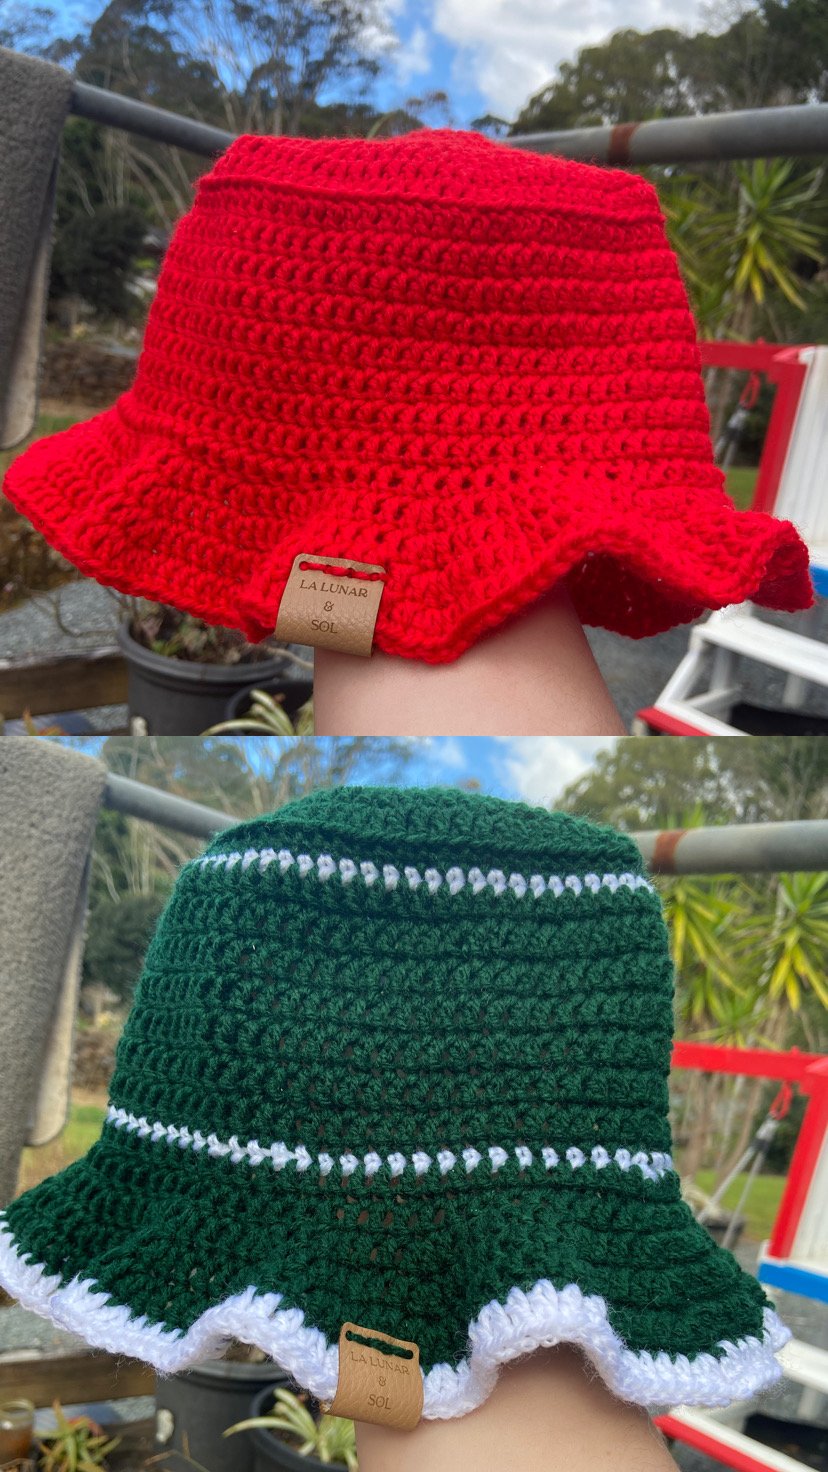 Image of Crochet Bucket Hats